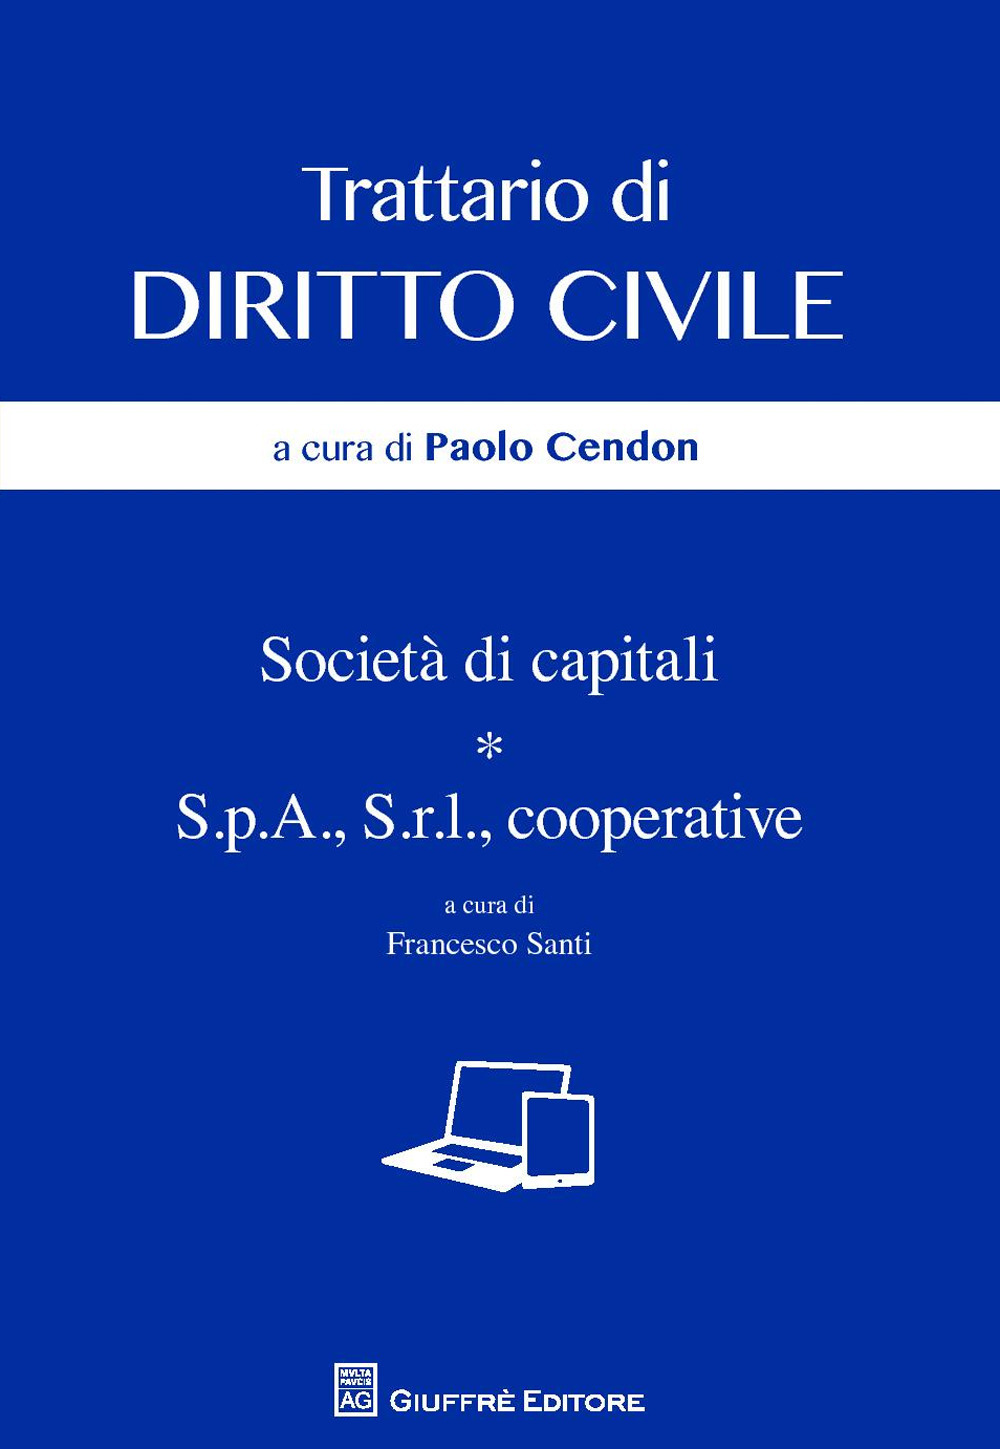 Image of Società di capitali. S.p.a., s.r.l., cooperative